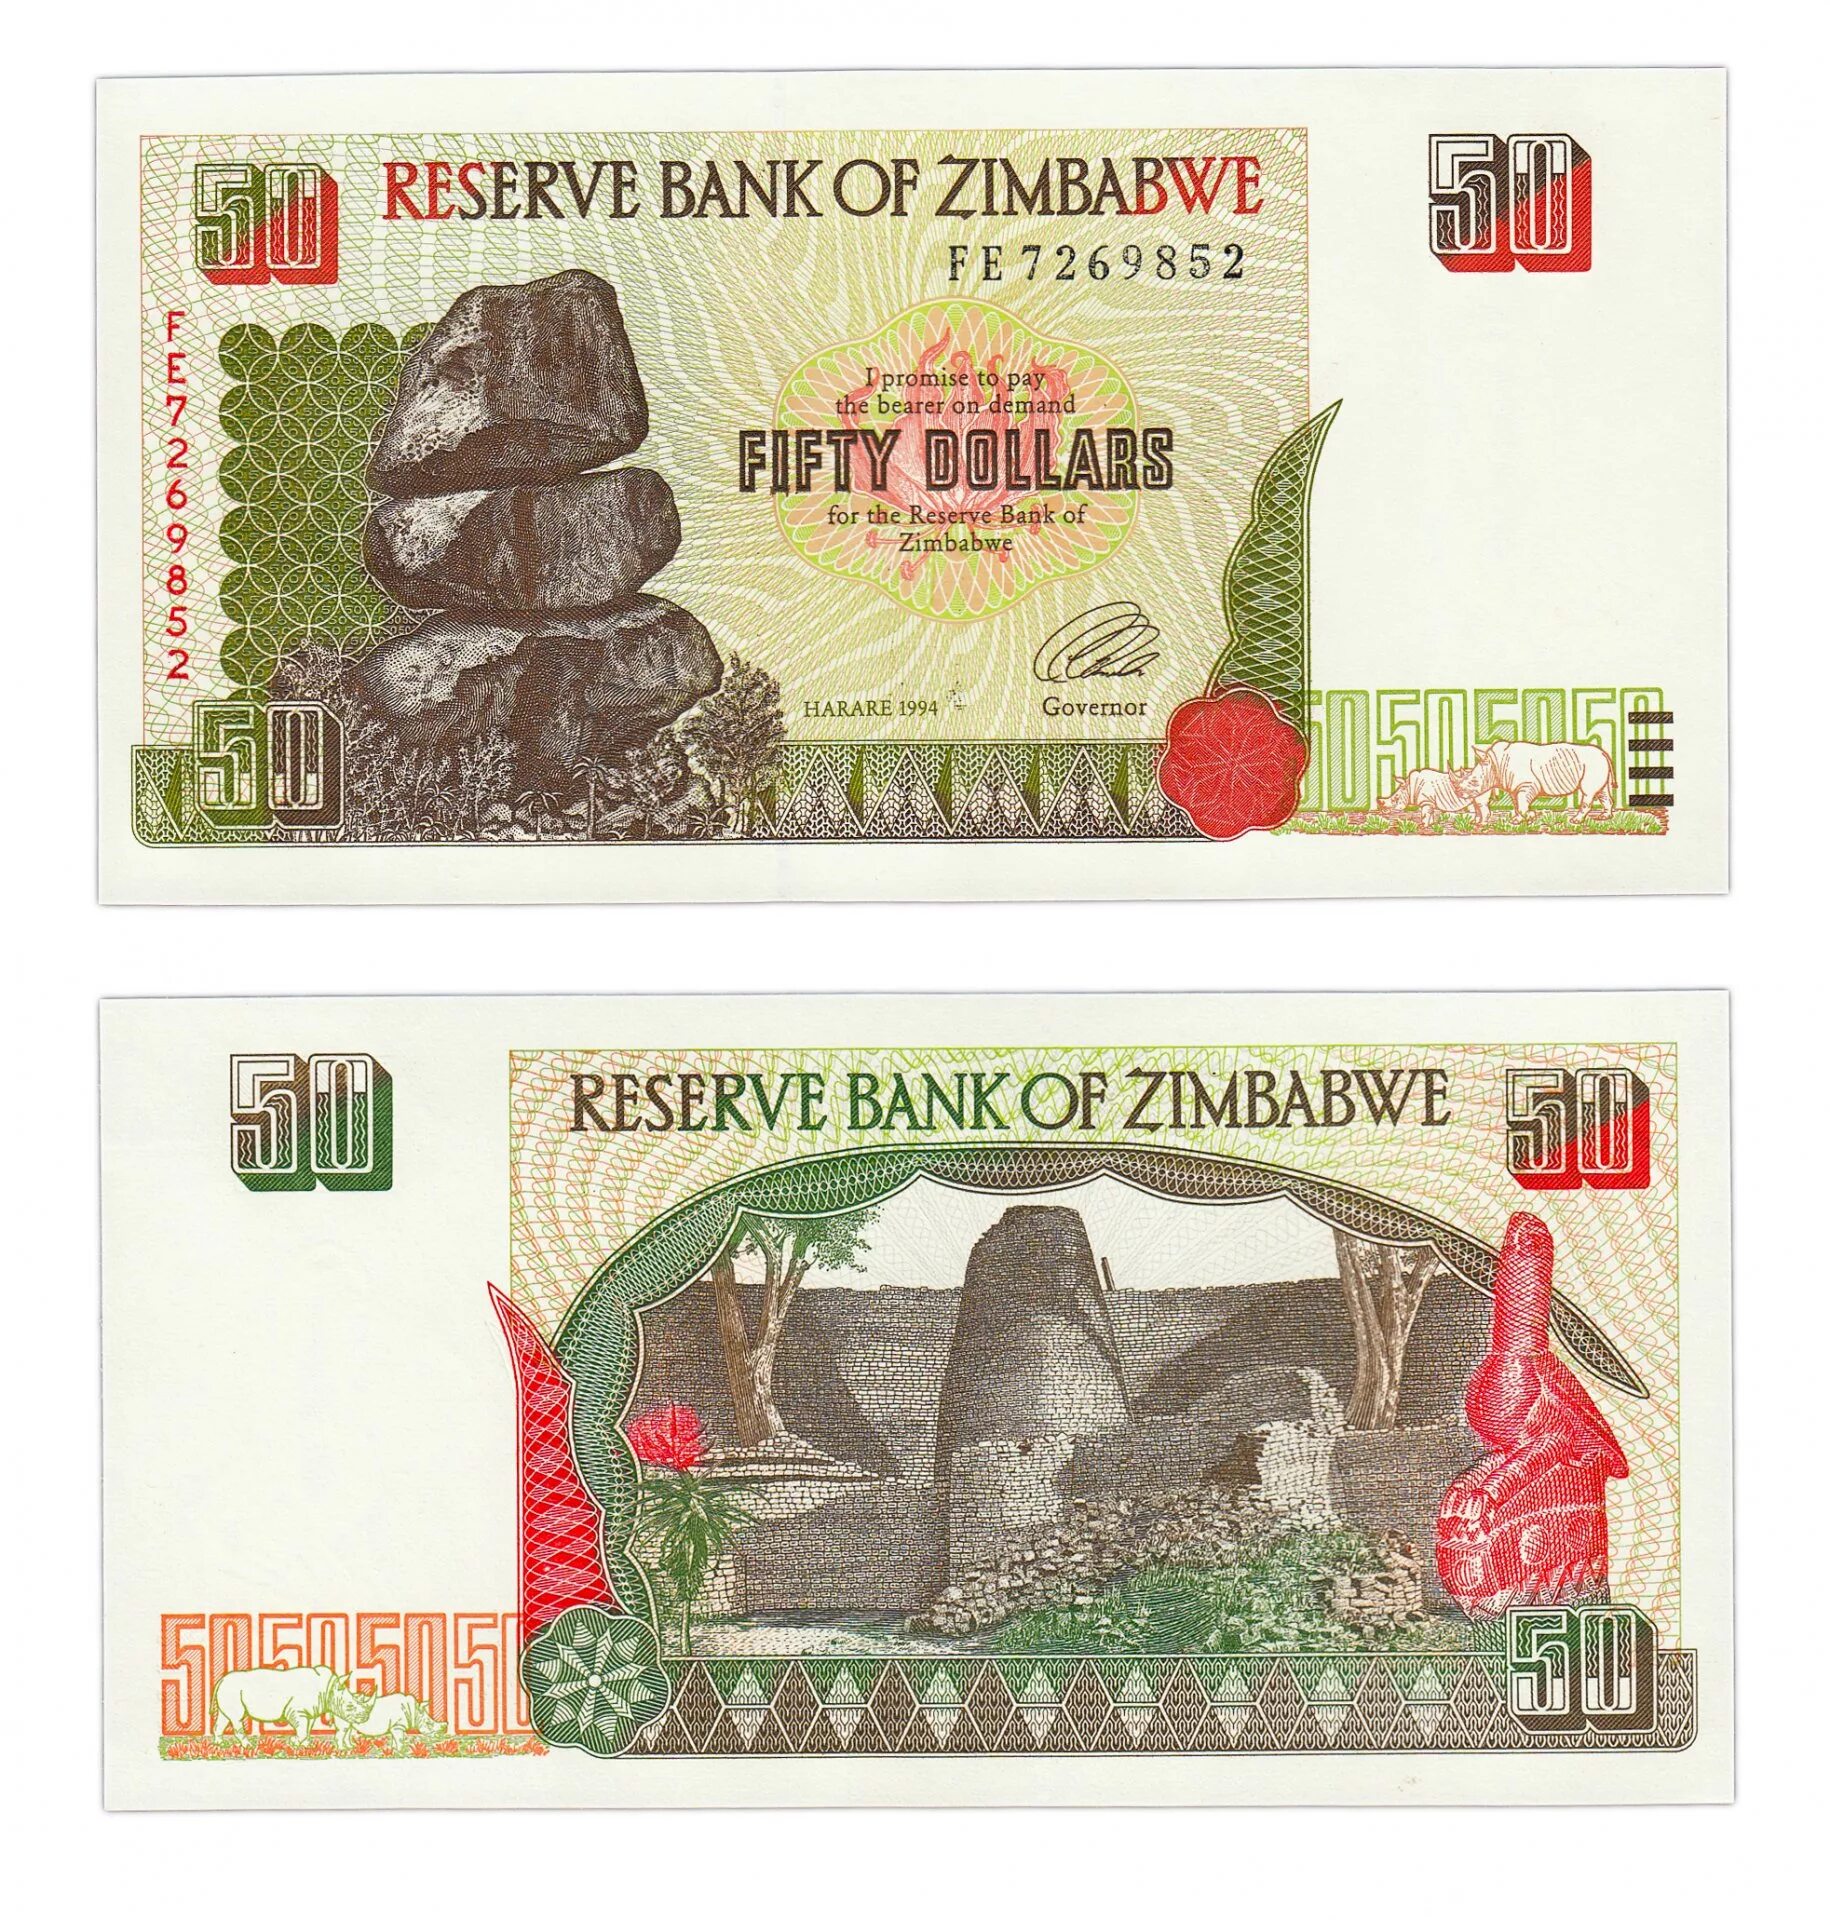 Национальная валюта Зимбабве. Купюры Зимбабве 2008. Зимбабве 50 долларов 1994. Зимбабвийский доллар купюры.